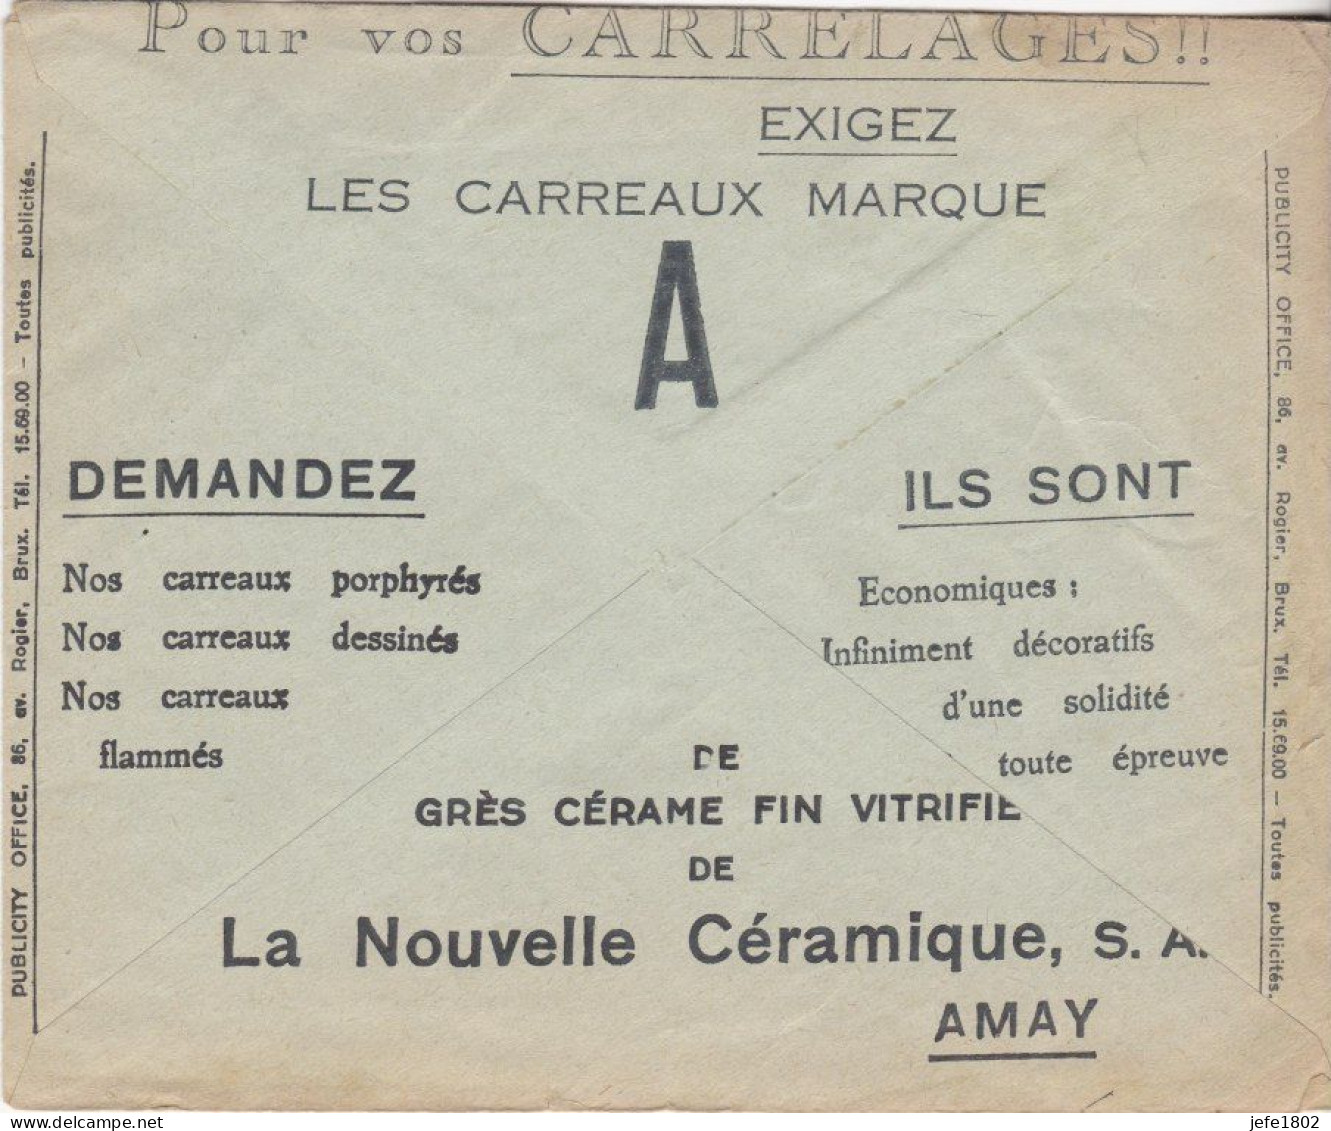 La Nouvelle Céramique - Carrelages - Porphyrés - Flammés - Décoratifs - Briefkaarten 1934-1951